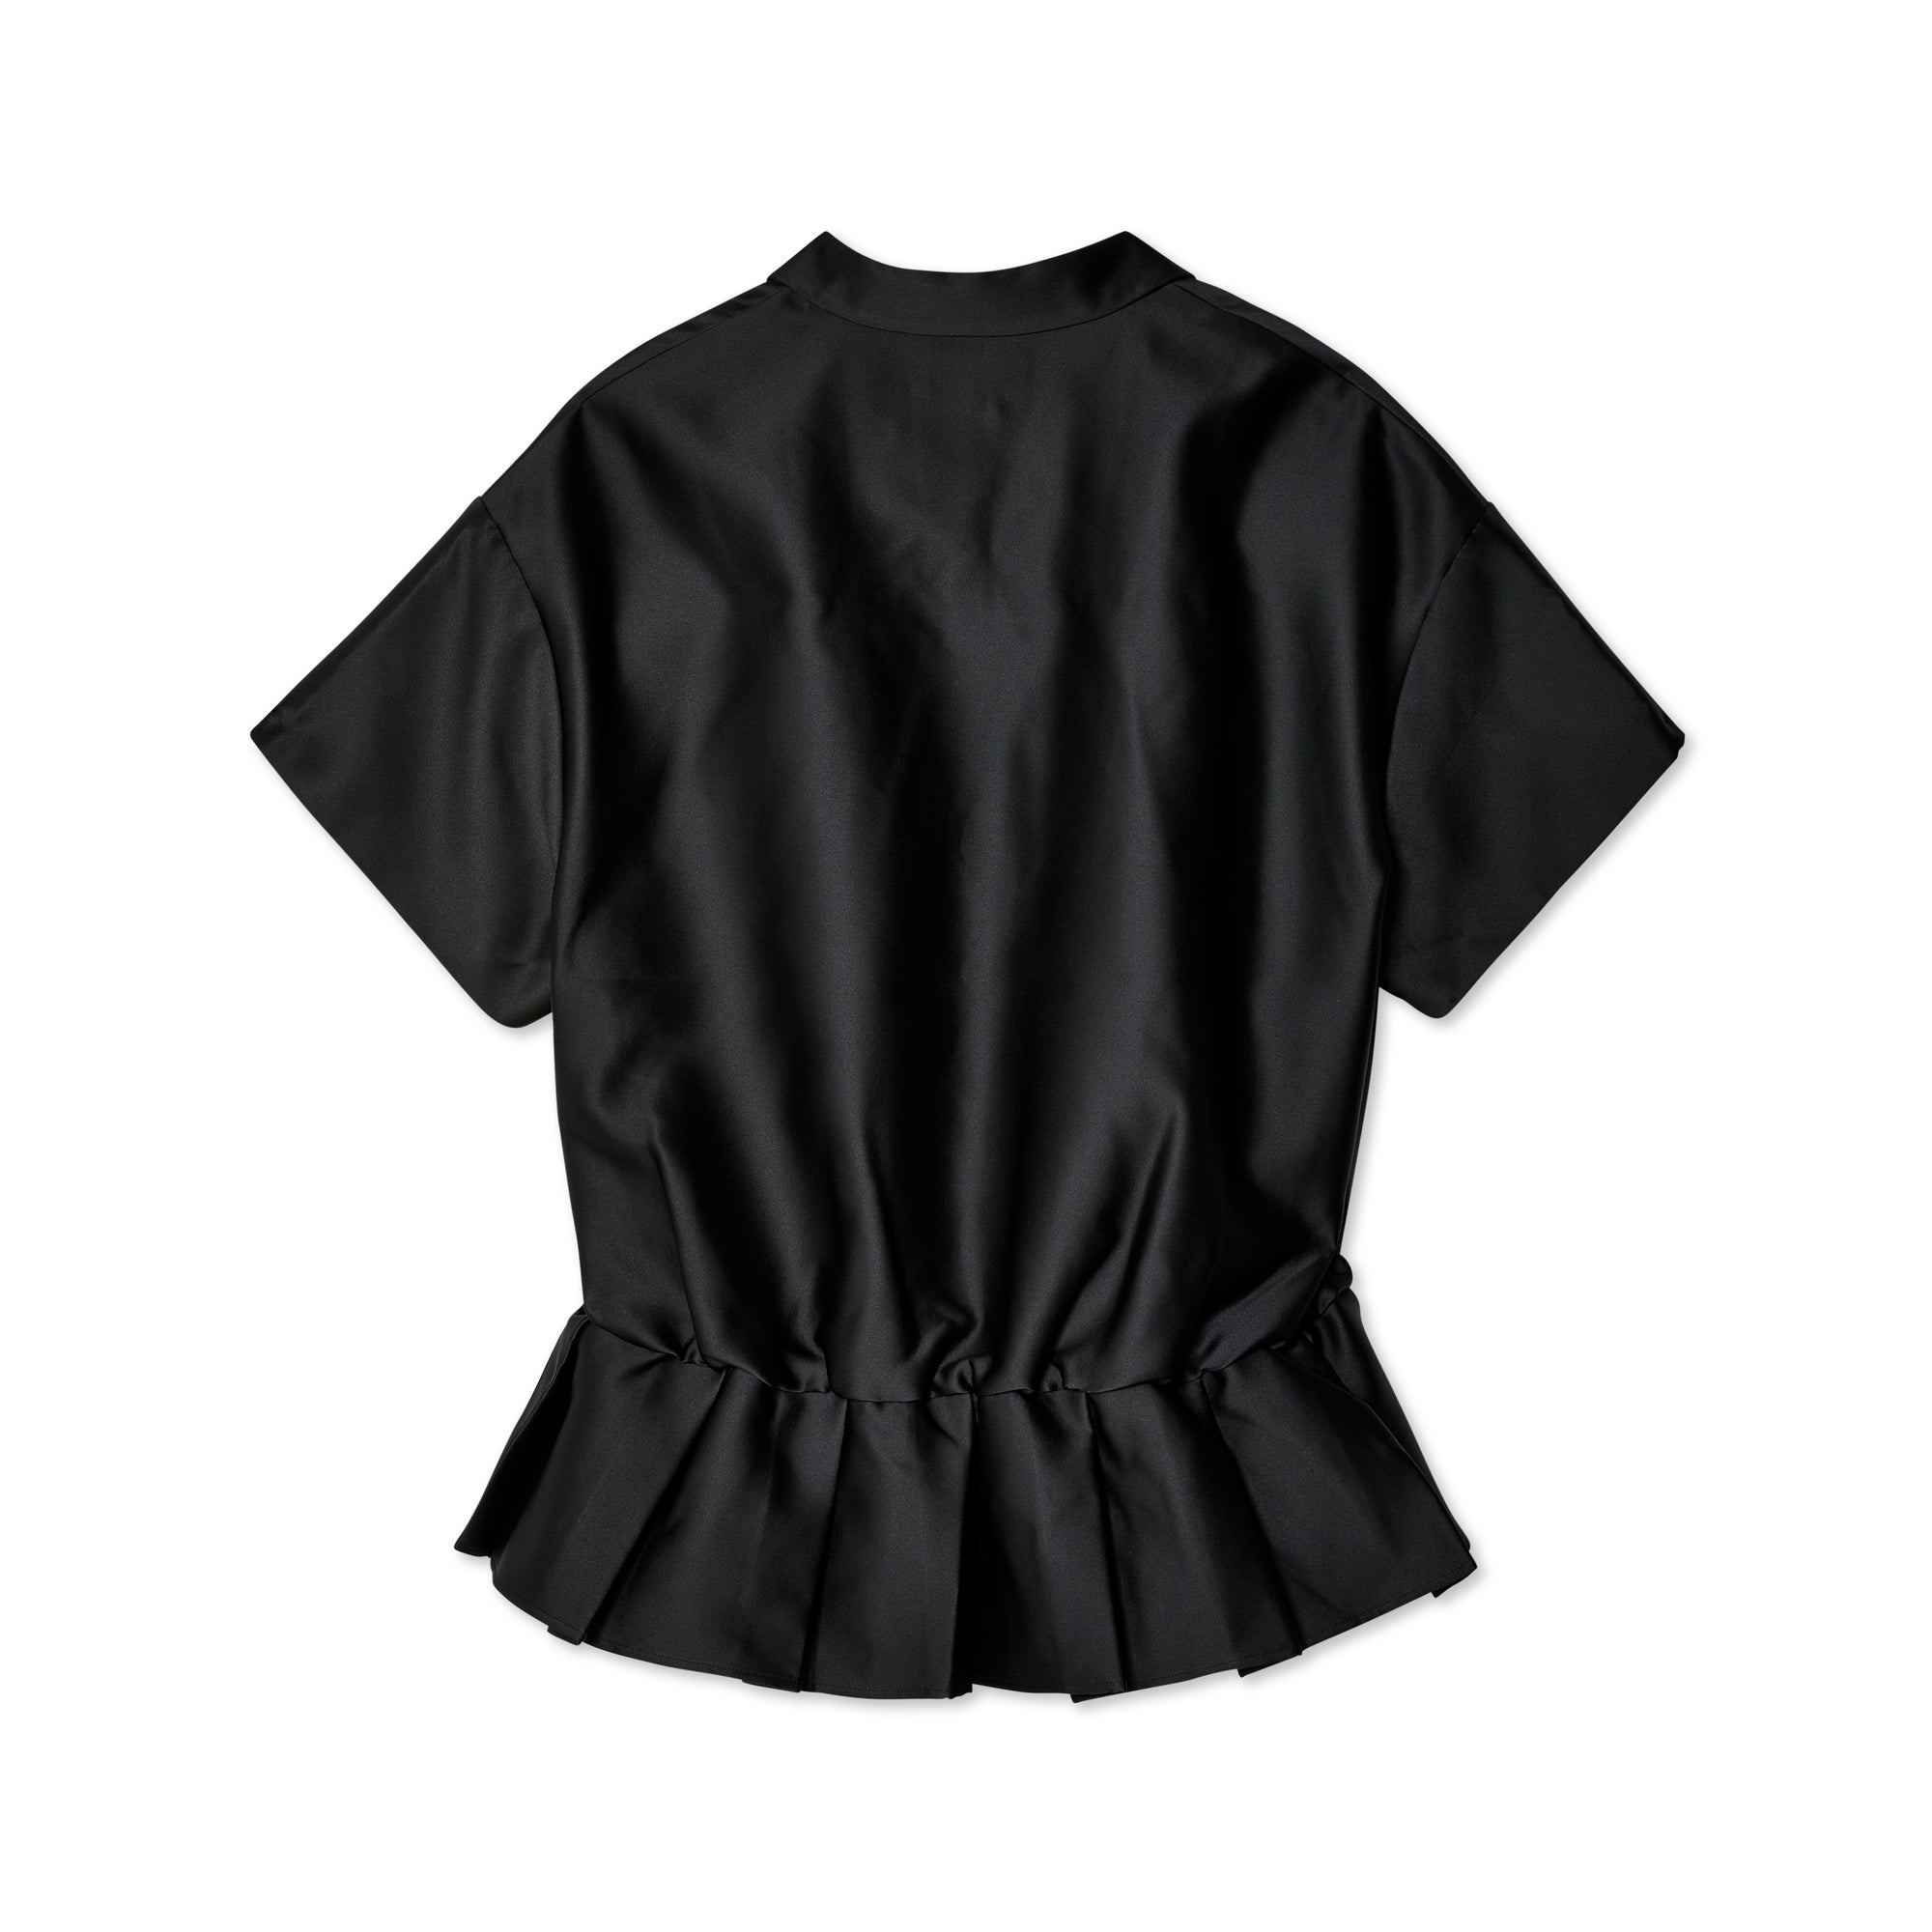 Shushu/Tong - Women's Short Dress - (Black) view 2